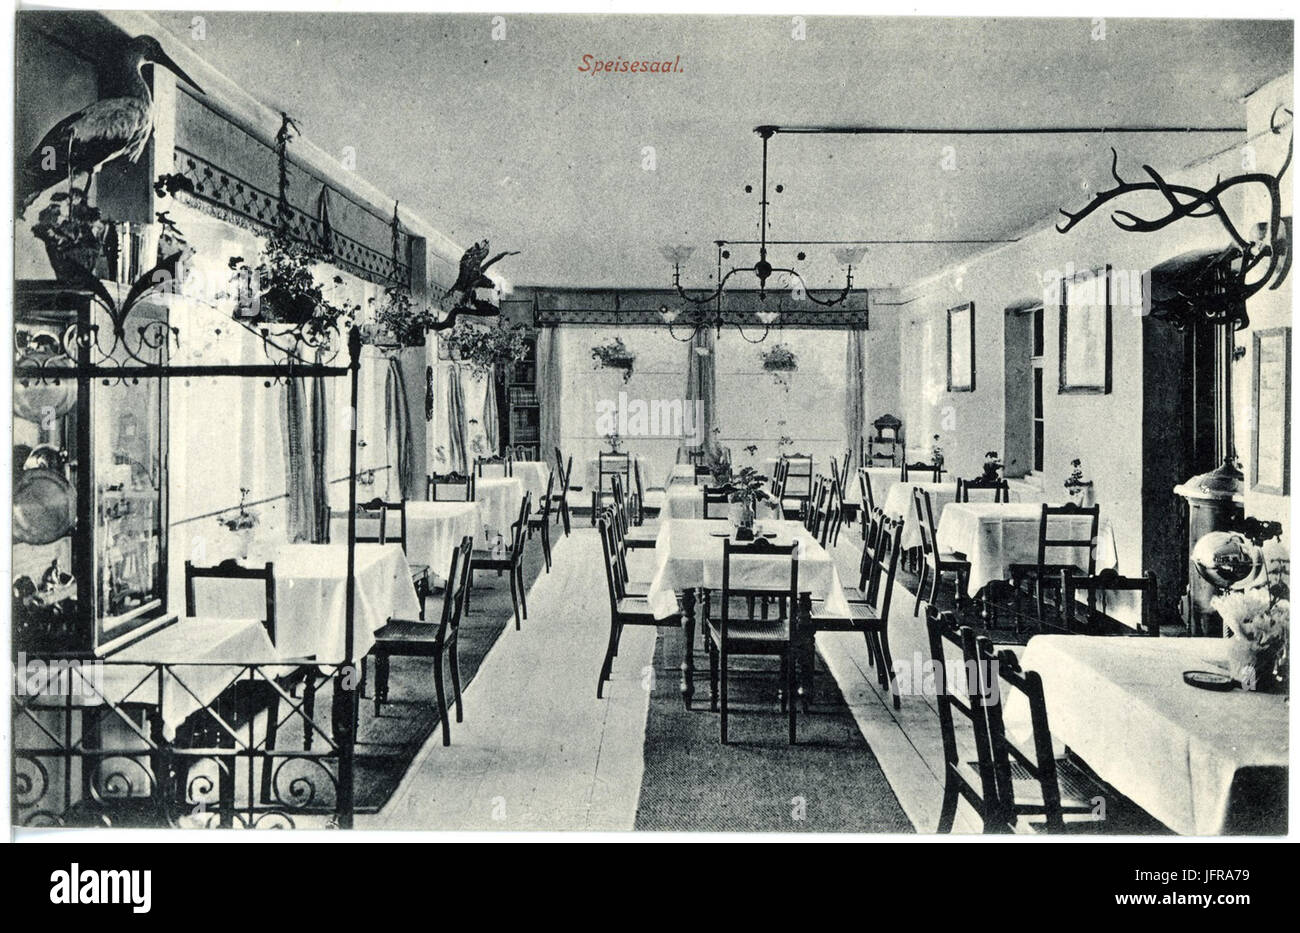 17871-Kipsdorf-1914-Bahnhotel  Zur Tellkoppe  - Speisesaal-Brück & Sohn Kunstverlag Stock Photo